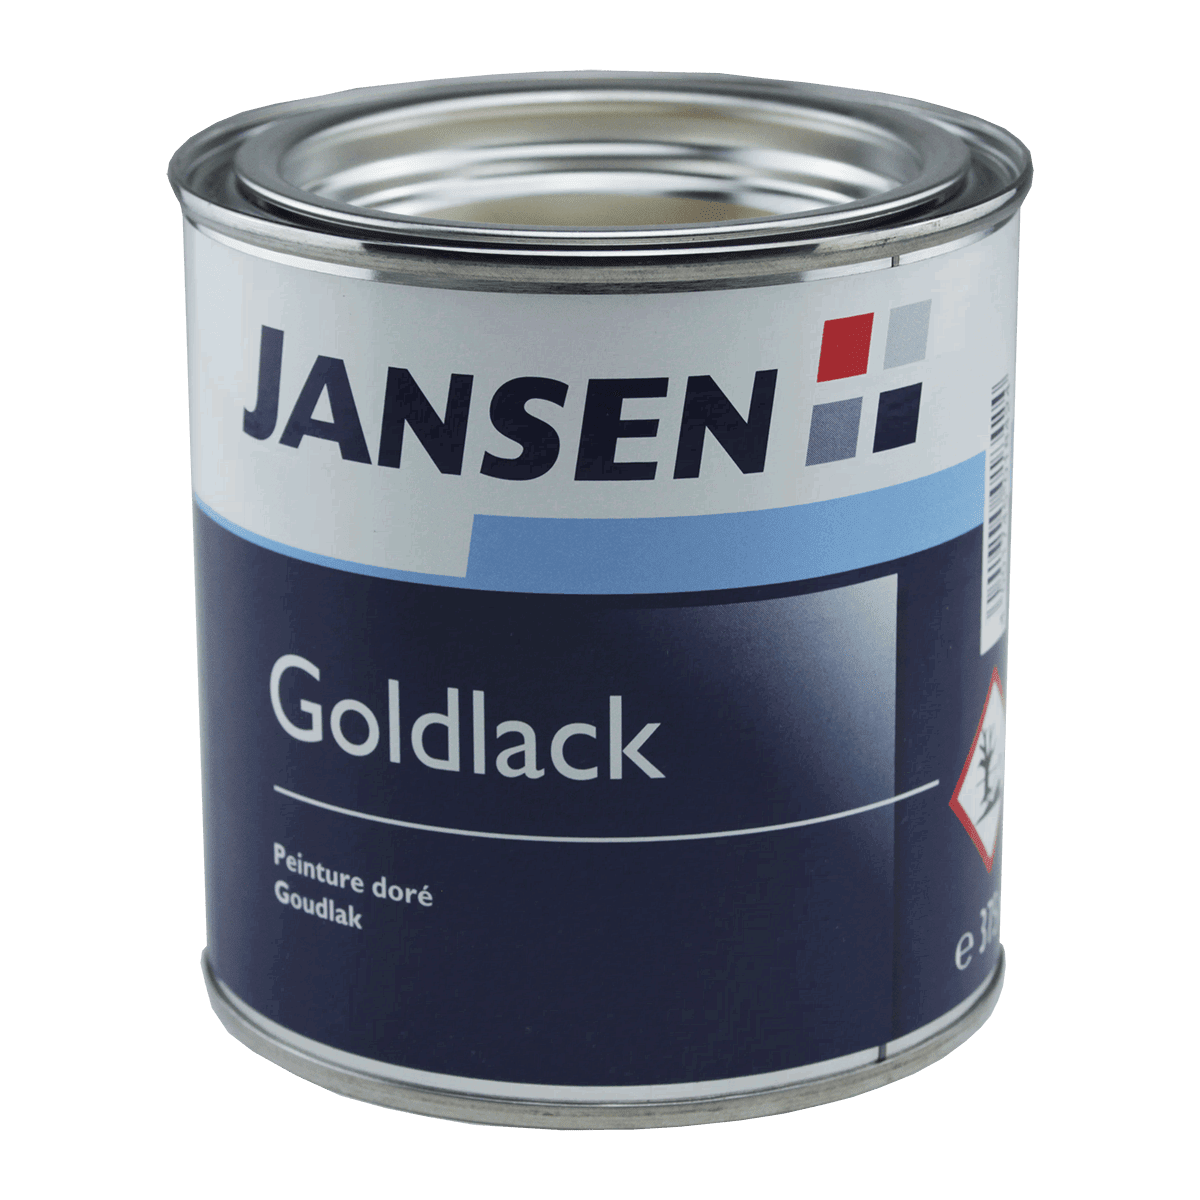 Jansen Goldlack von Jansen